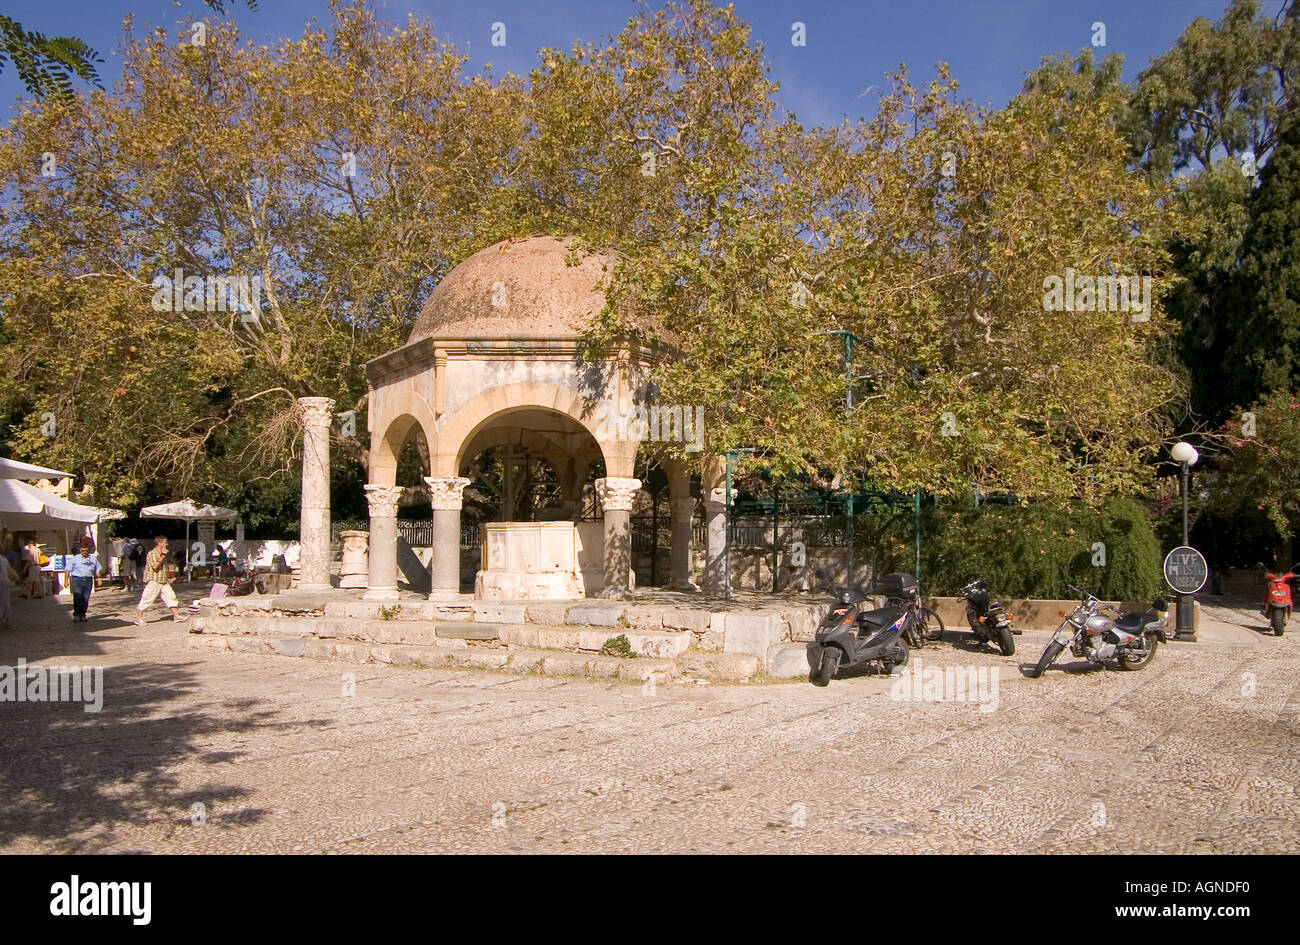 dh KOS STADT GRIECHENLAND KOS Platane Baum von Hippokrates Platanou Square Brunnen der Loggia Moschee alten griechischen Schulinsel Stockfoto